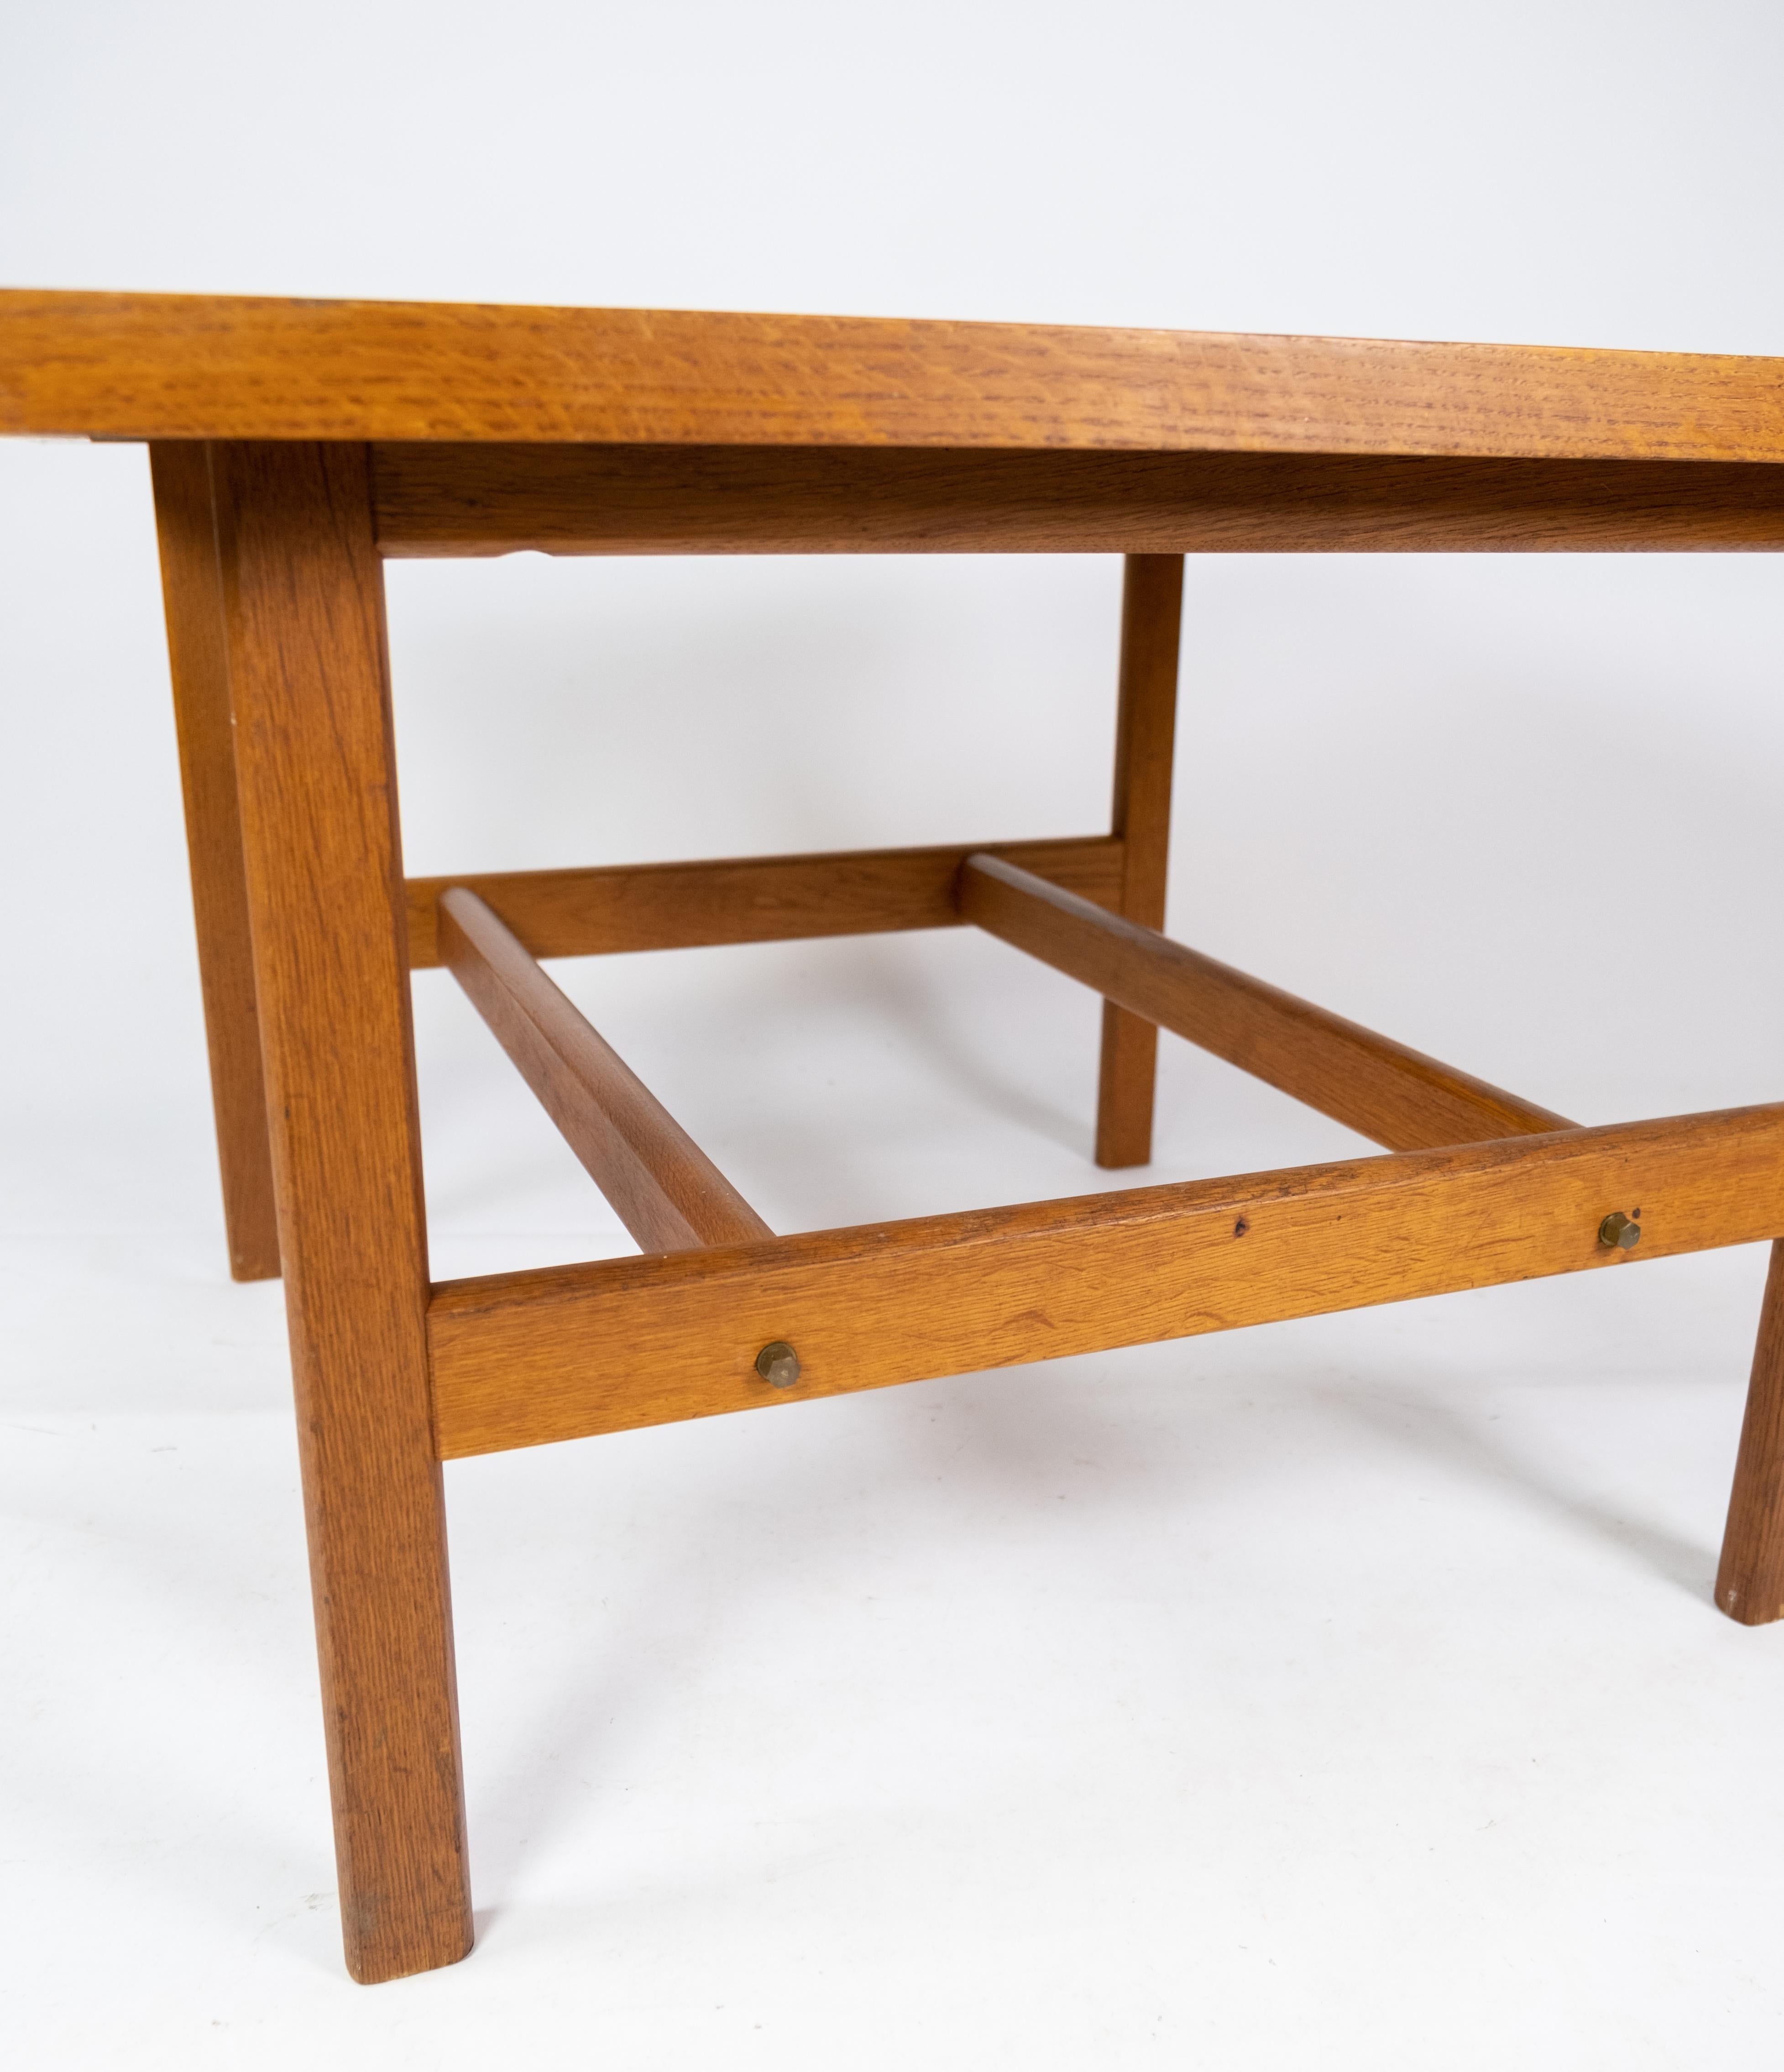 Scandinavian Modern Coffee Table in Soap Treated Oak Designed by Hans J. Wegner from the 1960s